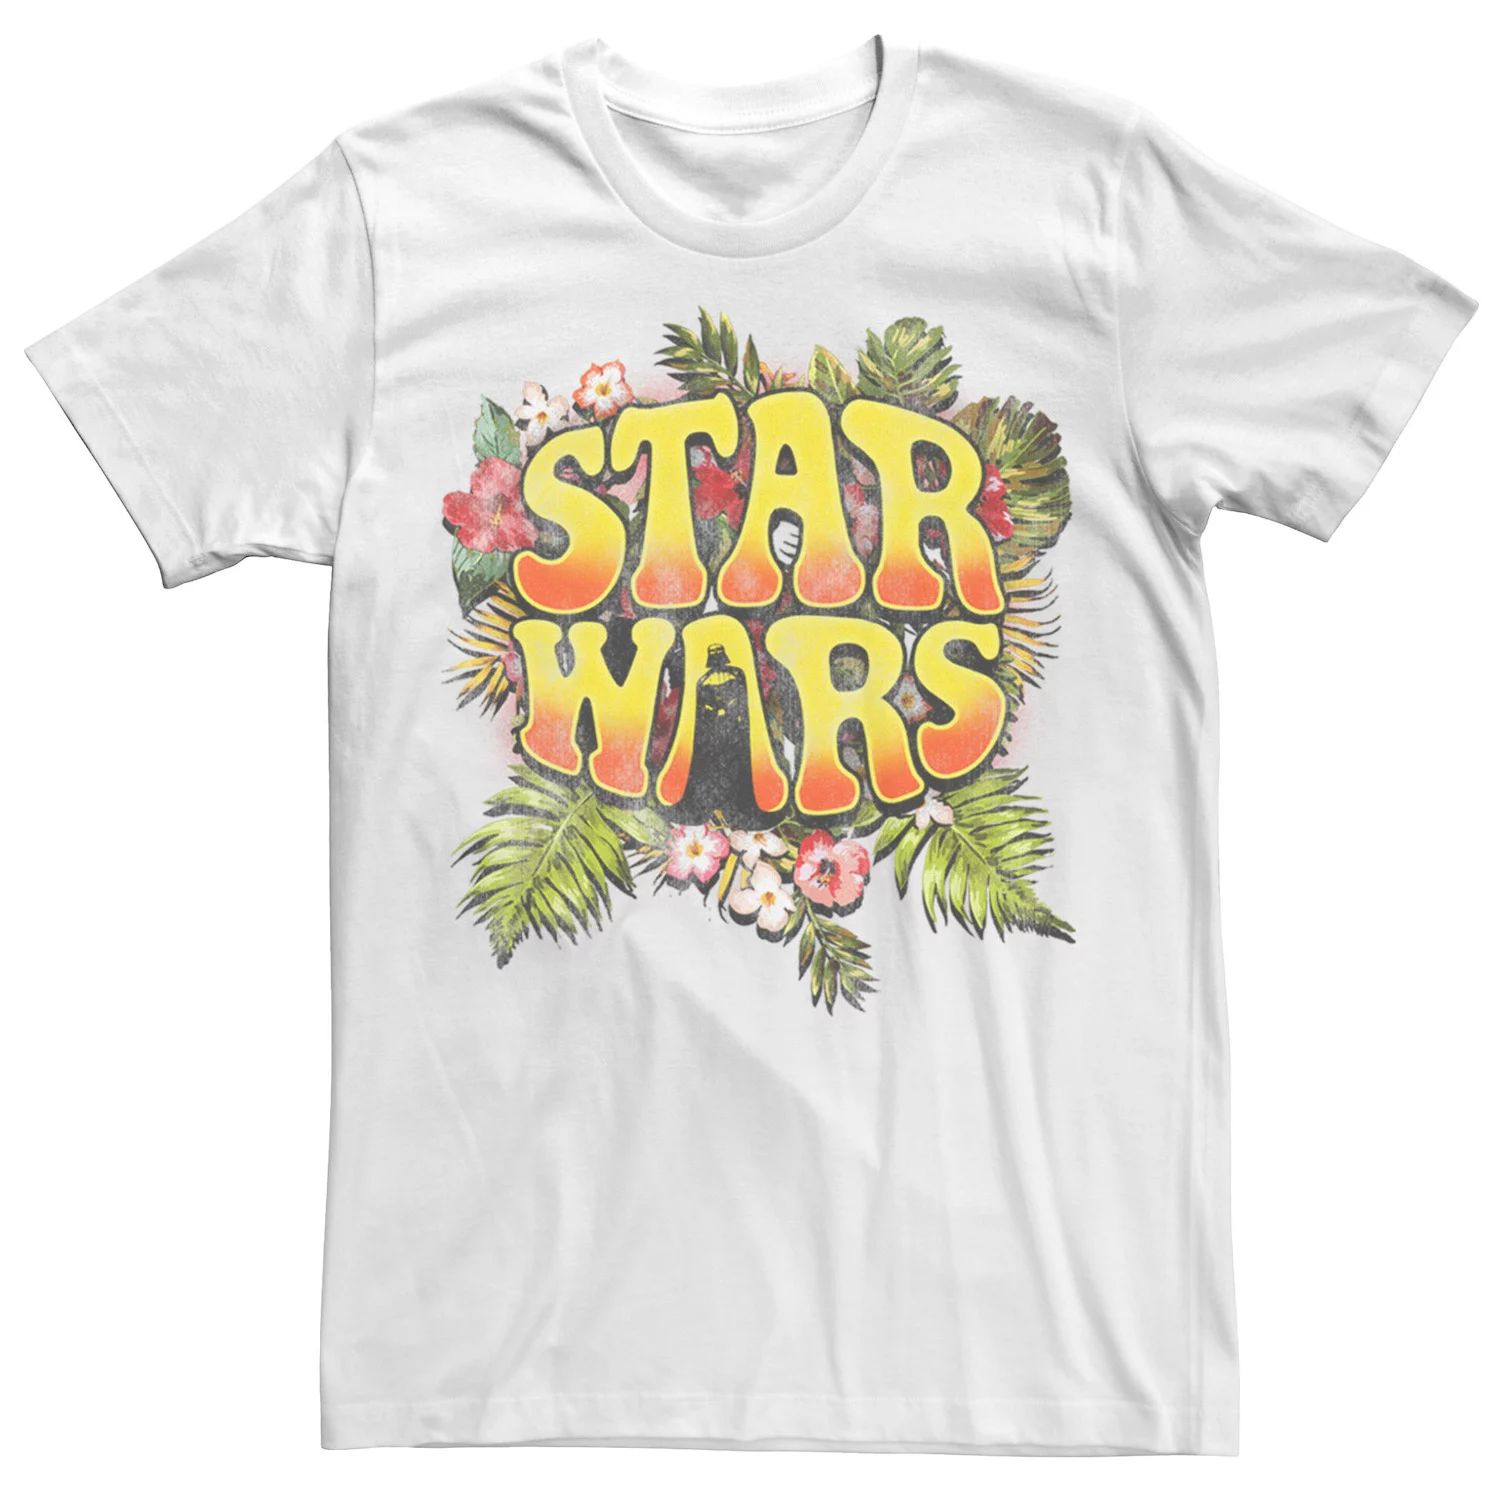 Мужская футболка с цветочным принтом и логотипом хиппи «Звездные войны Дарт Вейдер» Star Wars, белый